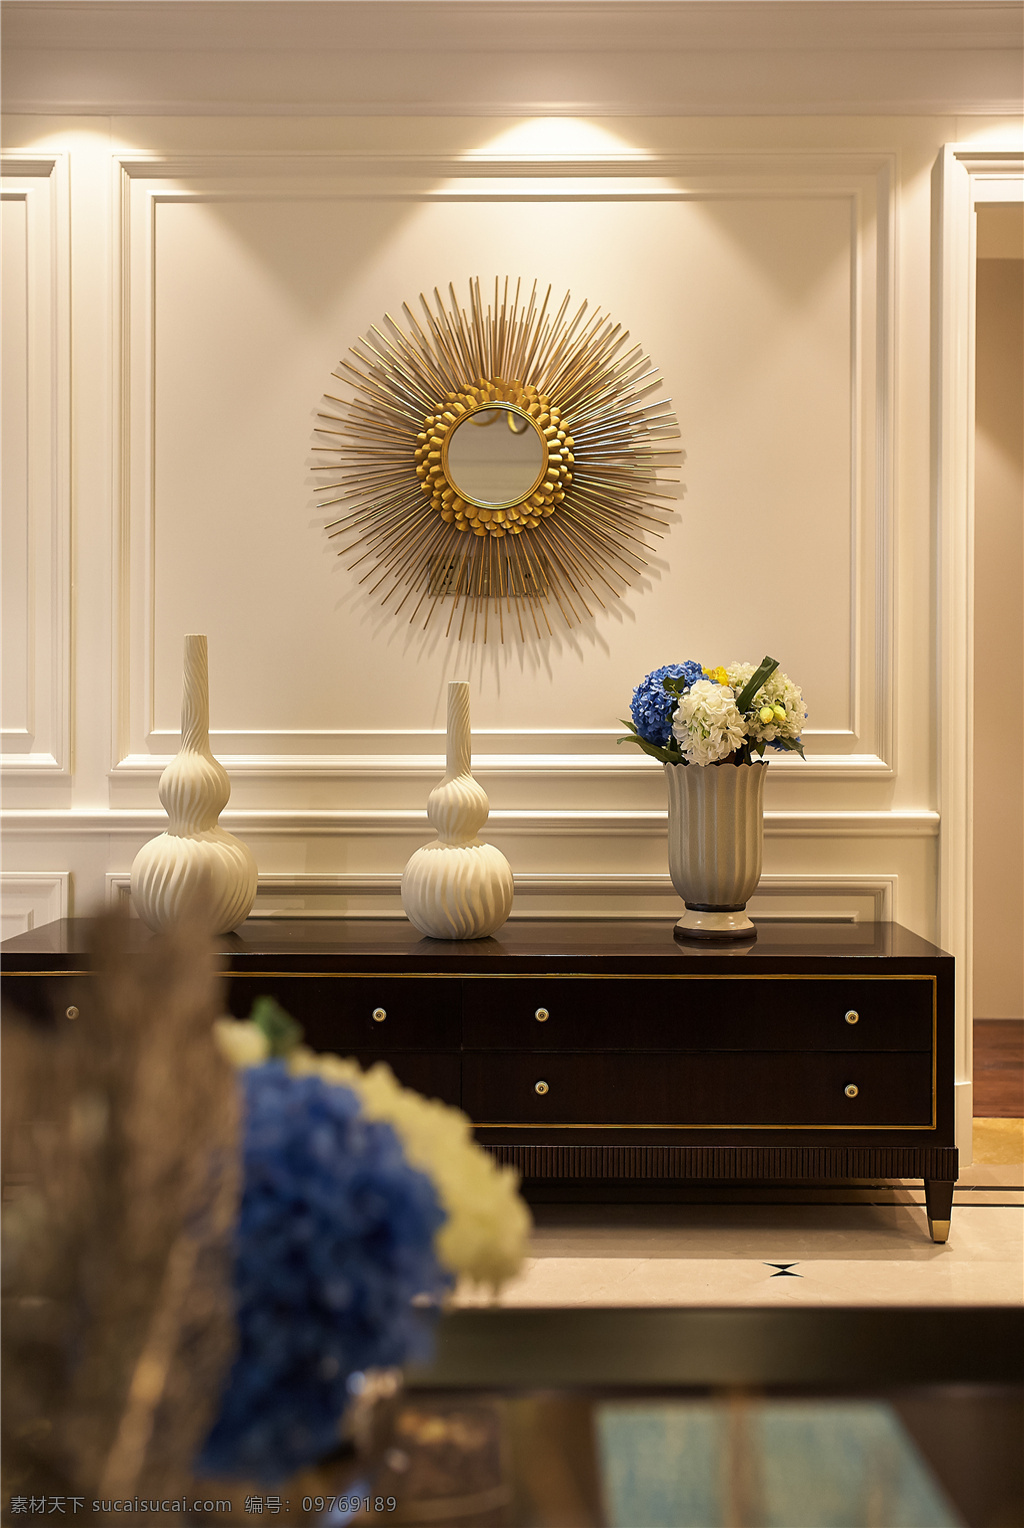 现代 时尚 简 欧 客厅 红木 柜子 装饰 镜 装修 效果图 简约 客厅装修 装饰设计